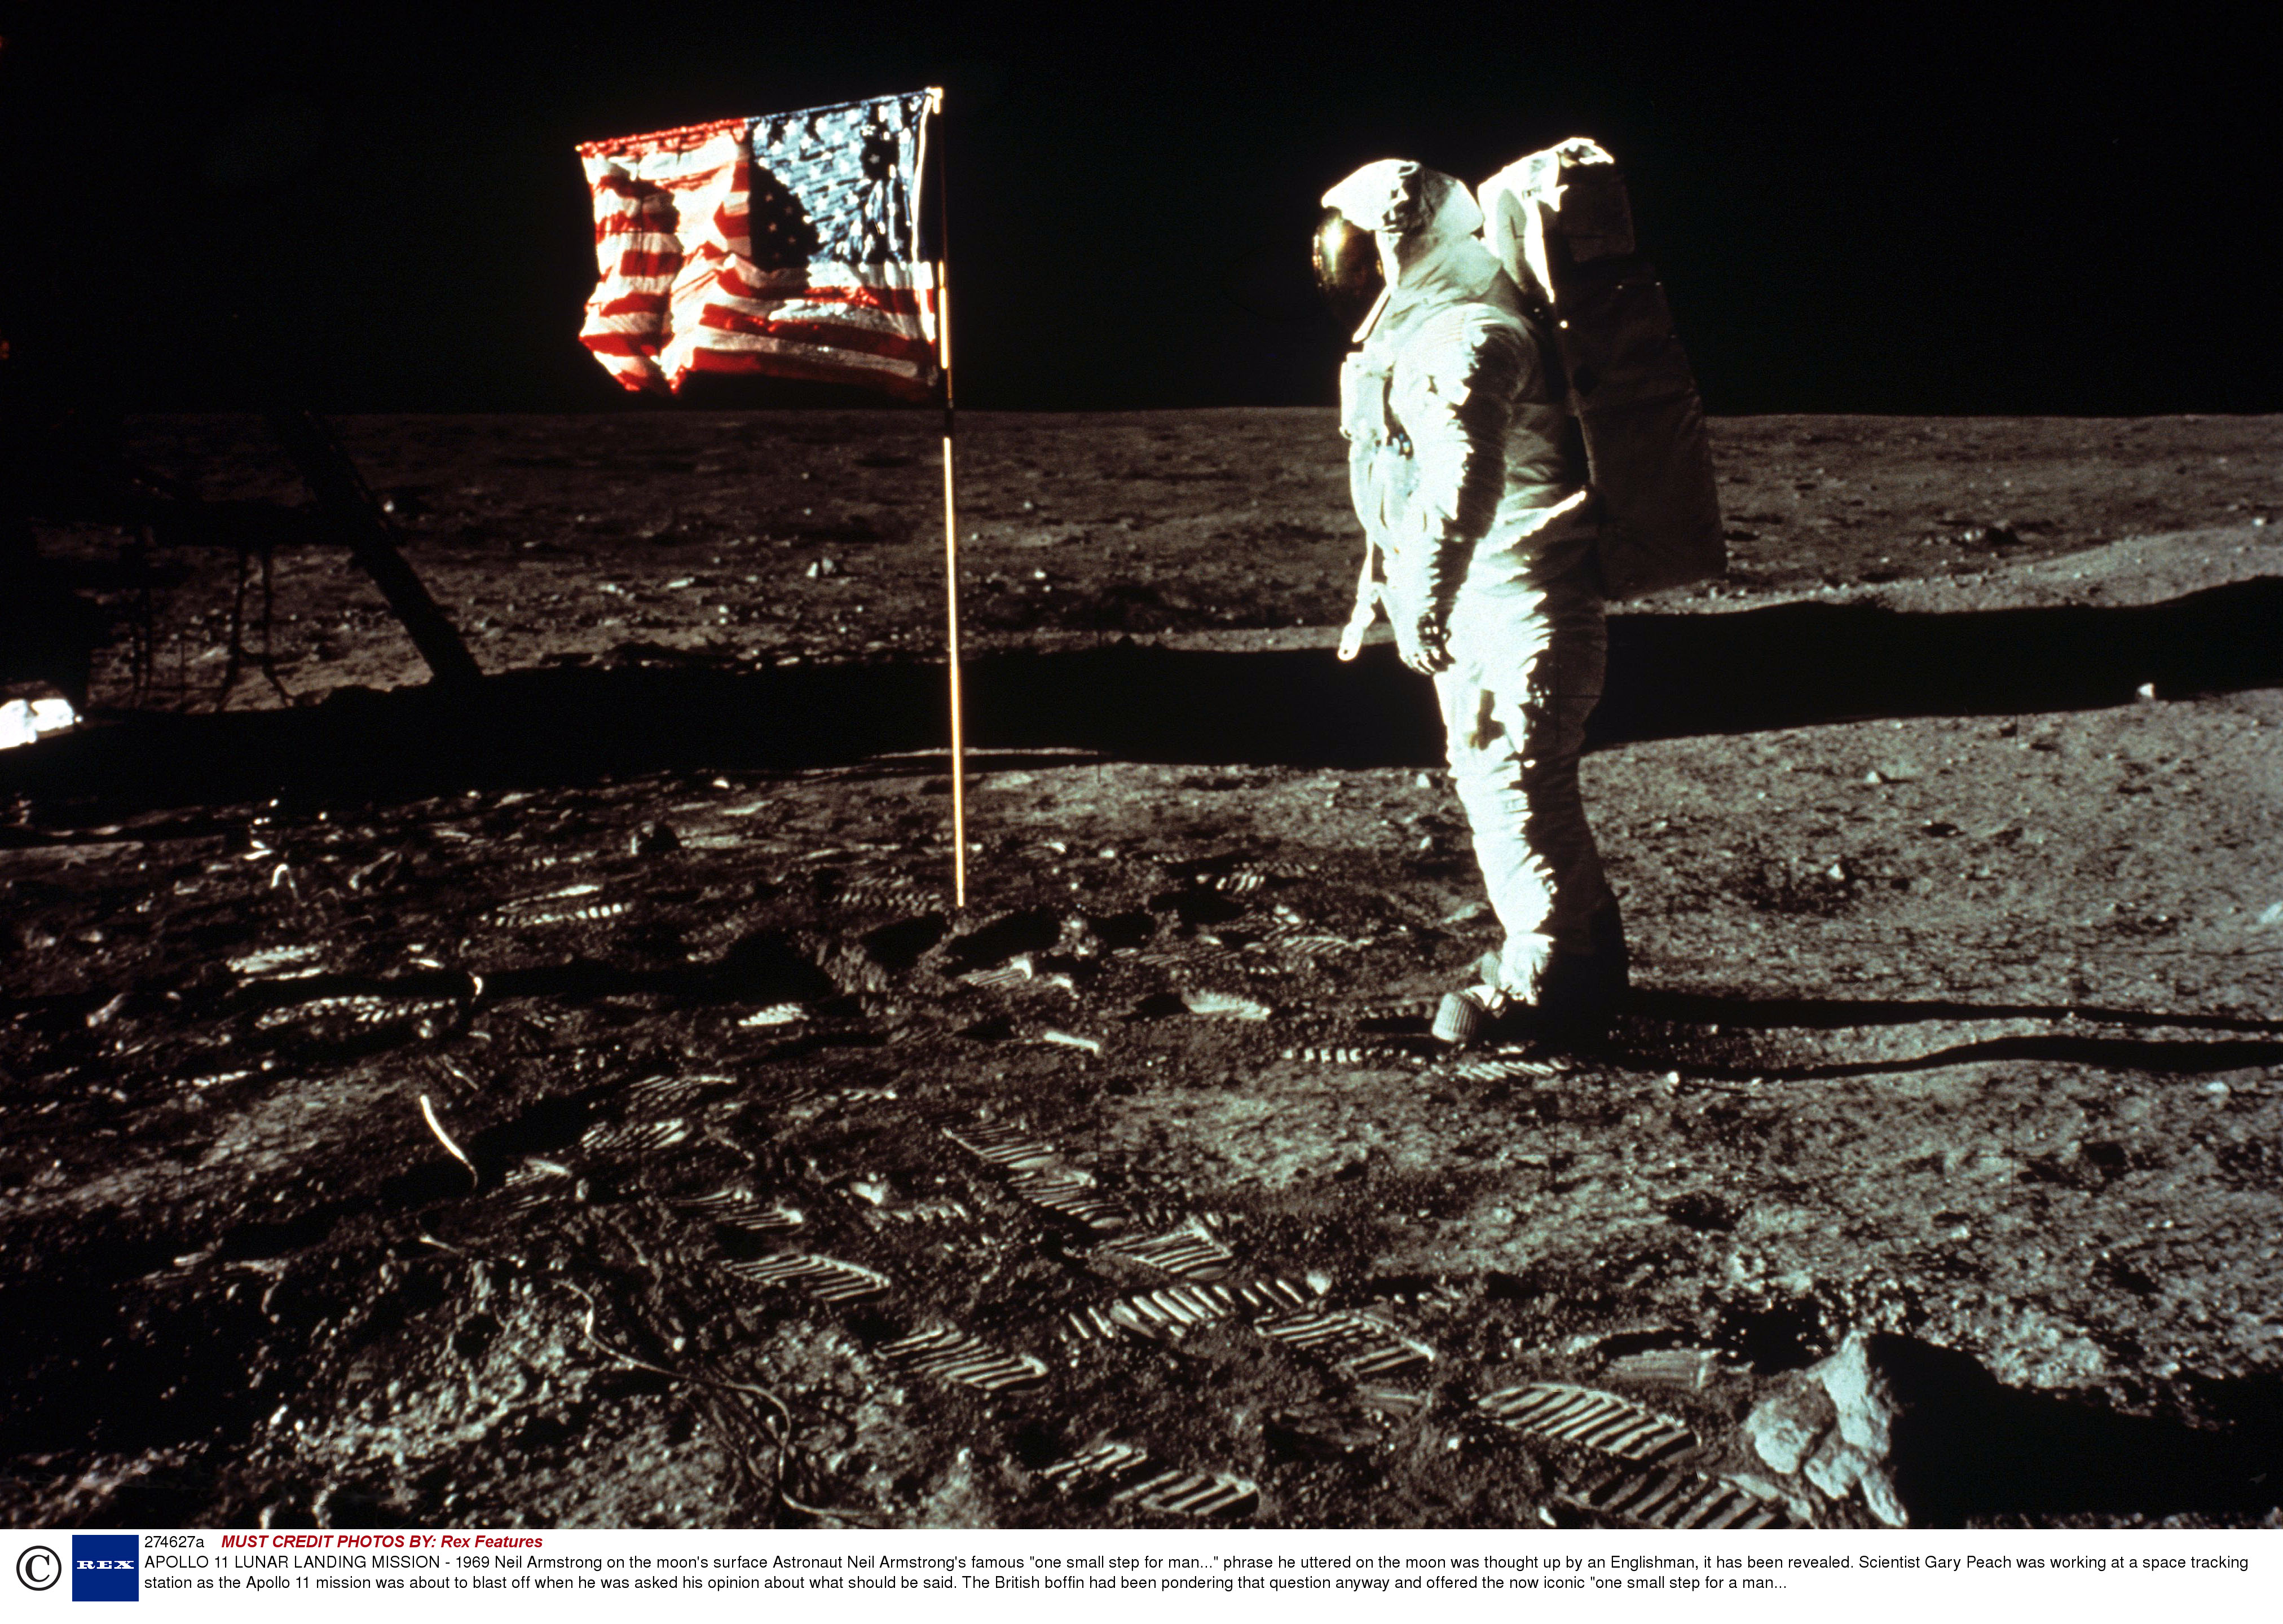 Armstrongova manželka našla kameru, která natočila misi Apollo 11 na Měsíci